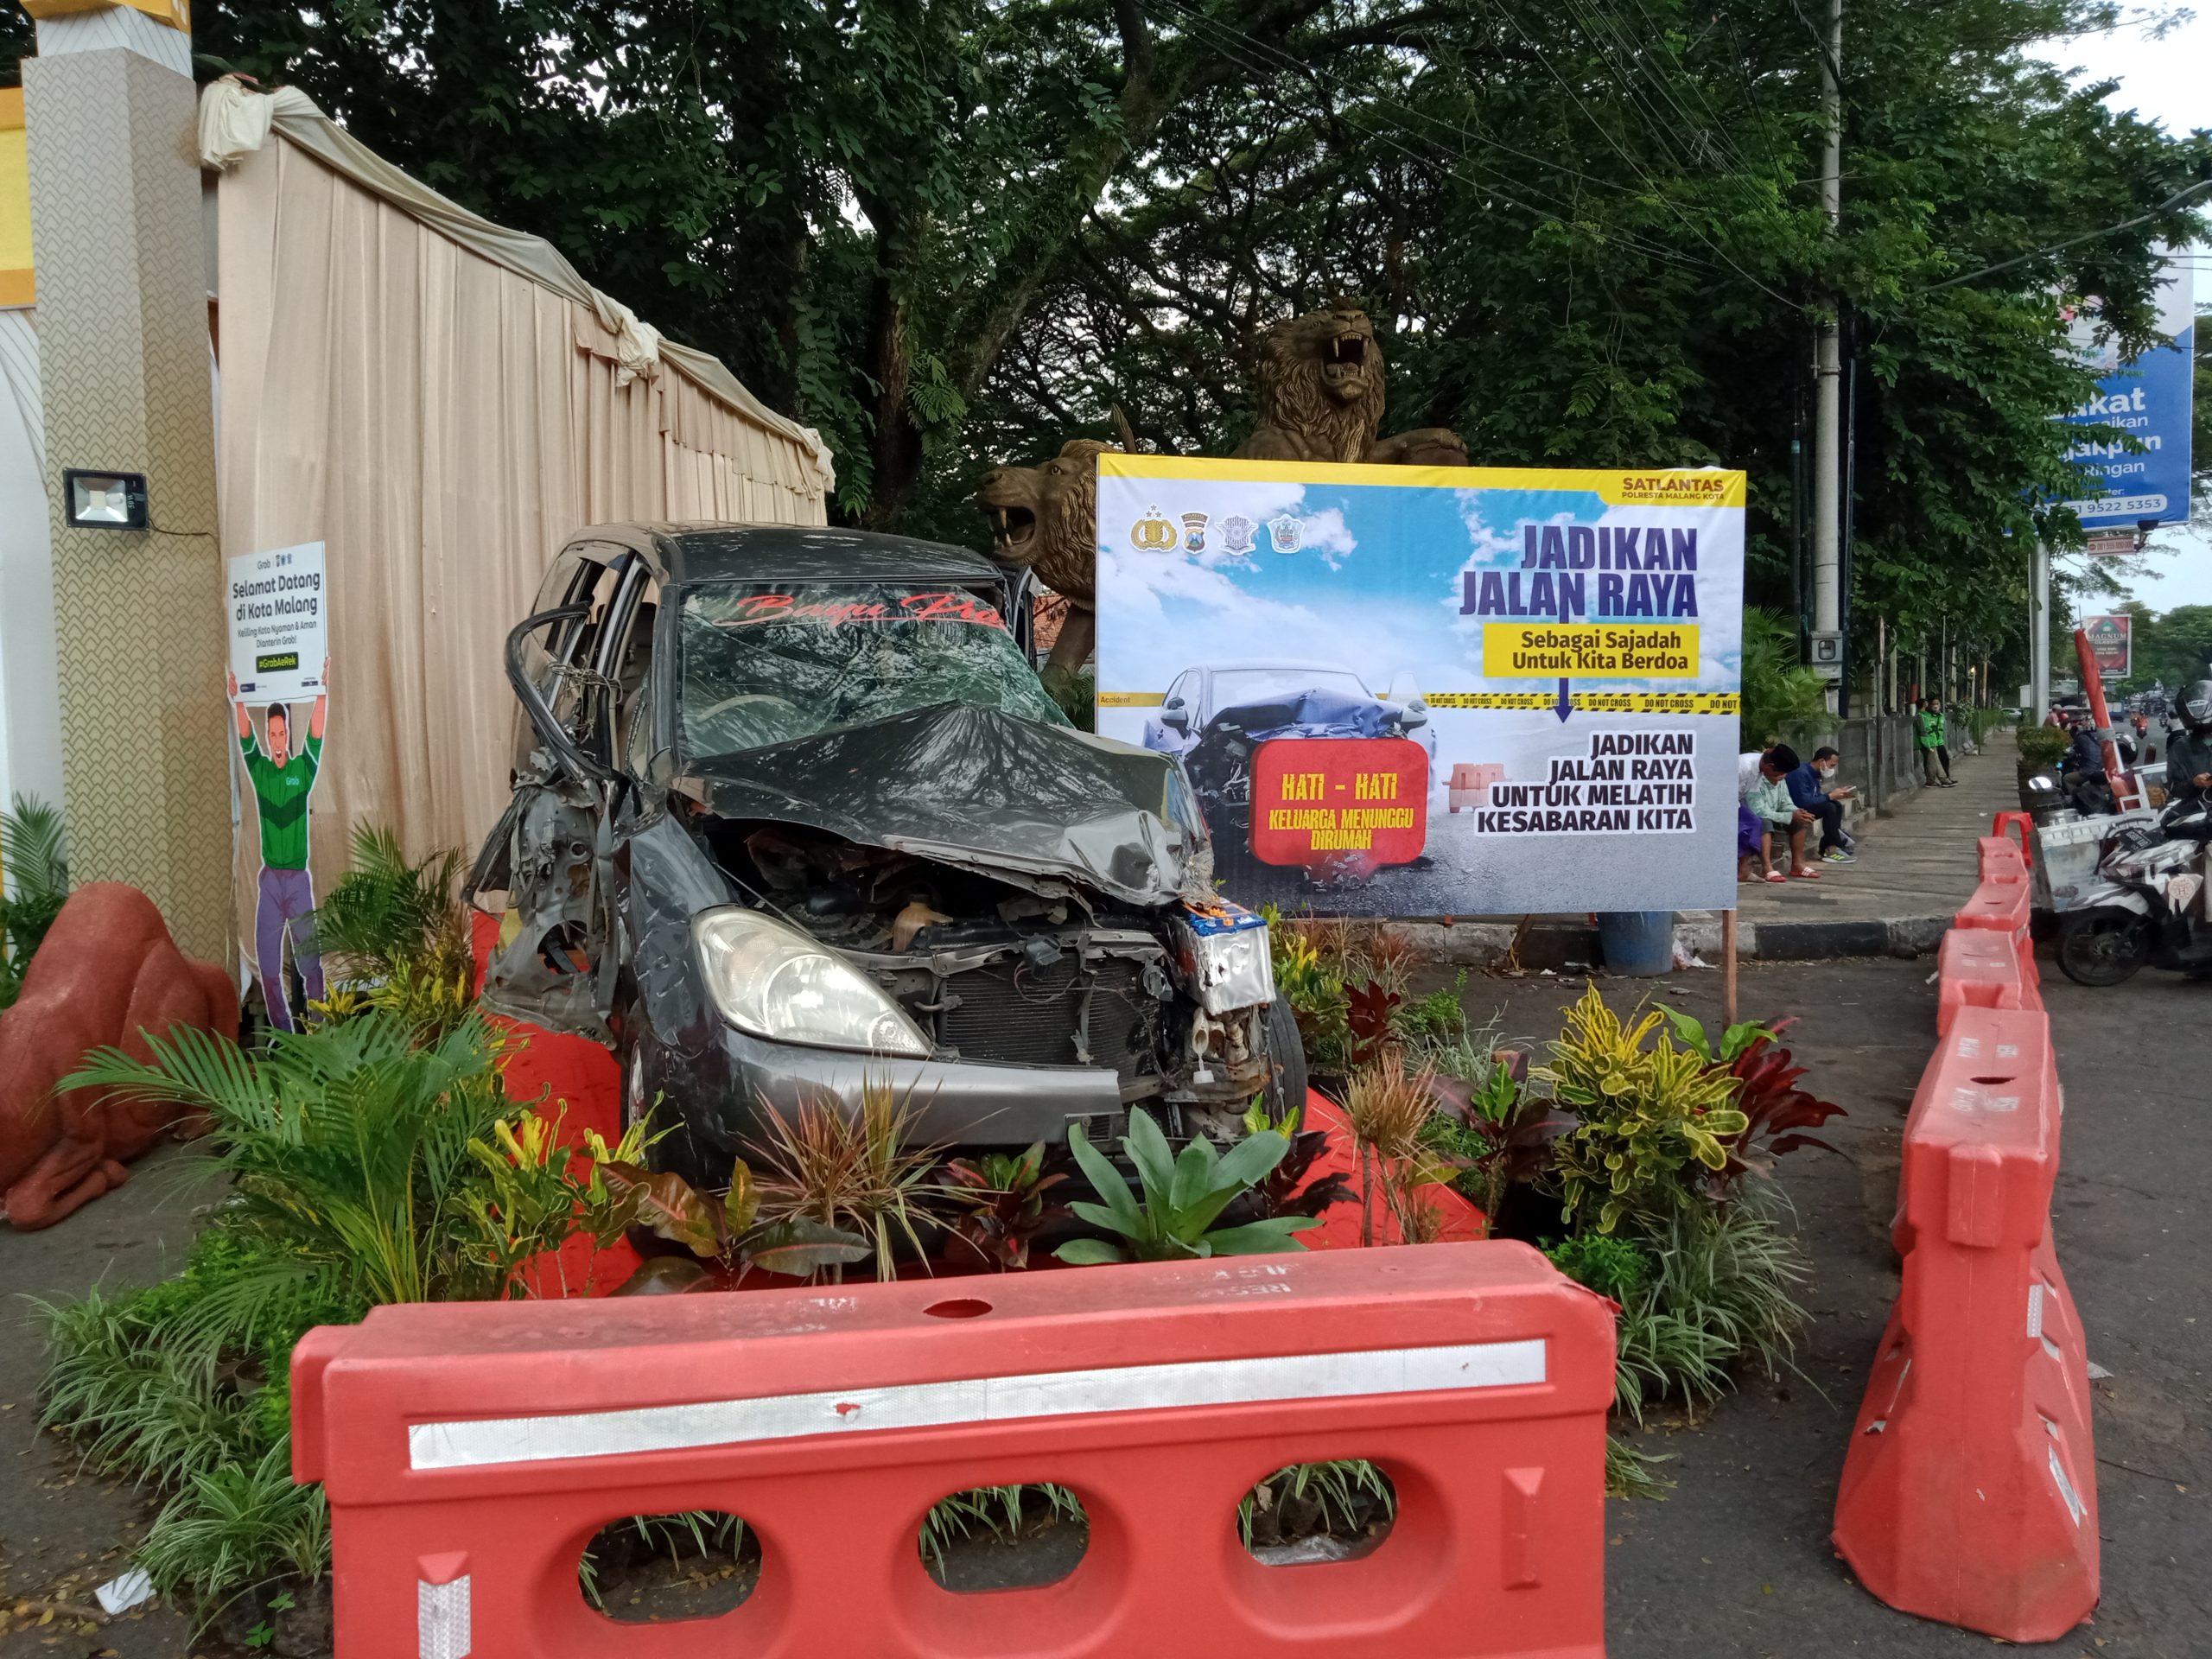 Ingatkan Pemudik Agar Lebih Hati-Hati, Polisi Pajang Mobil Rusak untuk Spot Foto di Kota Malang